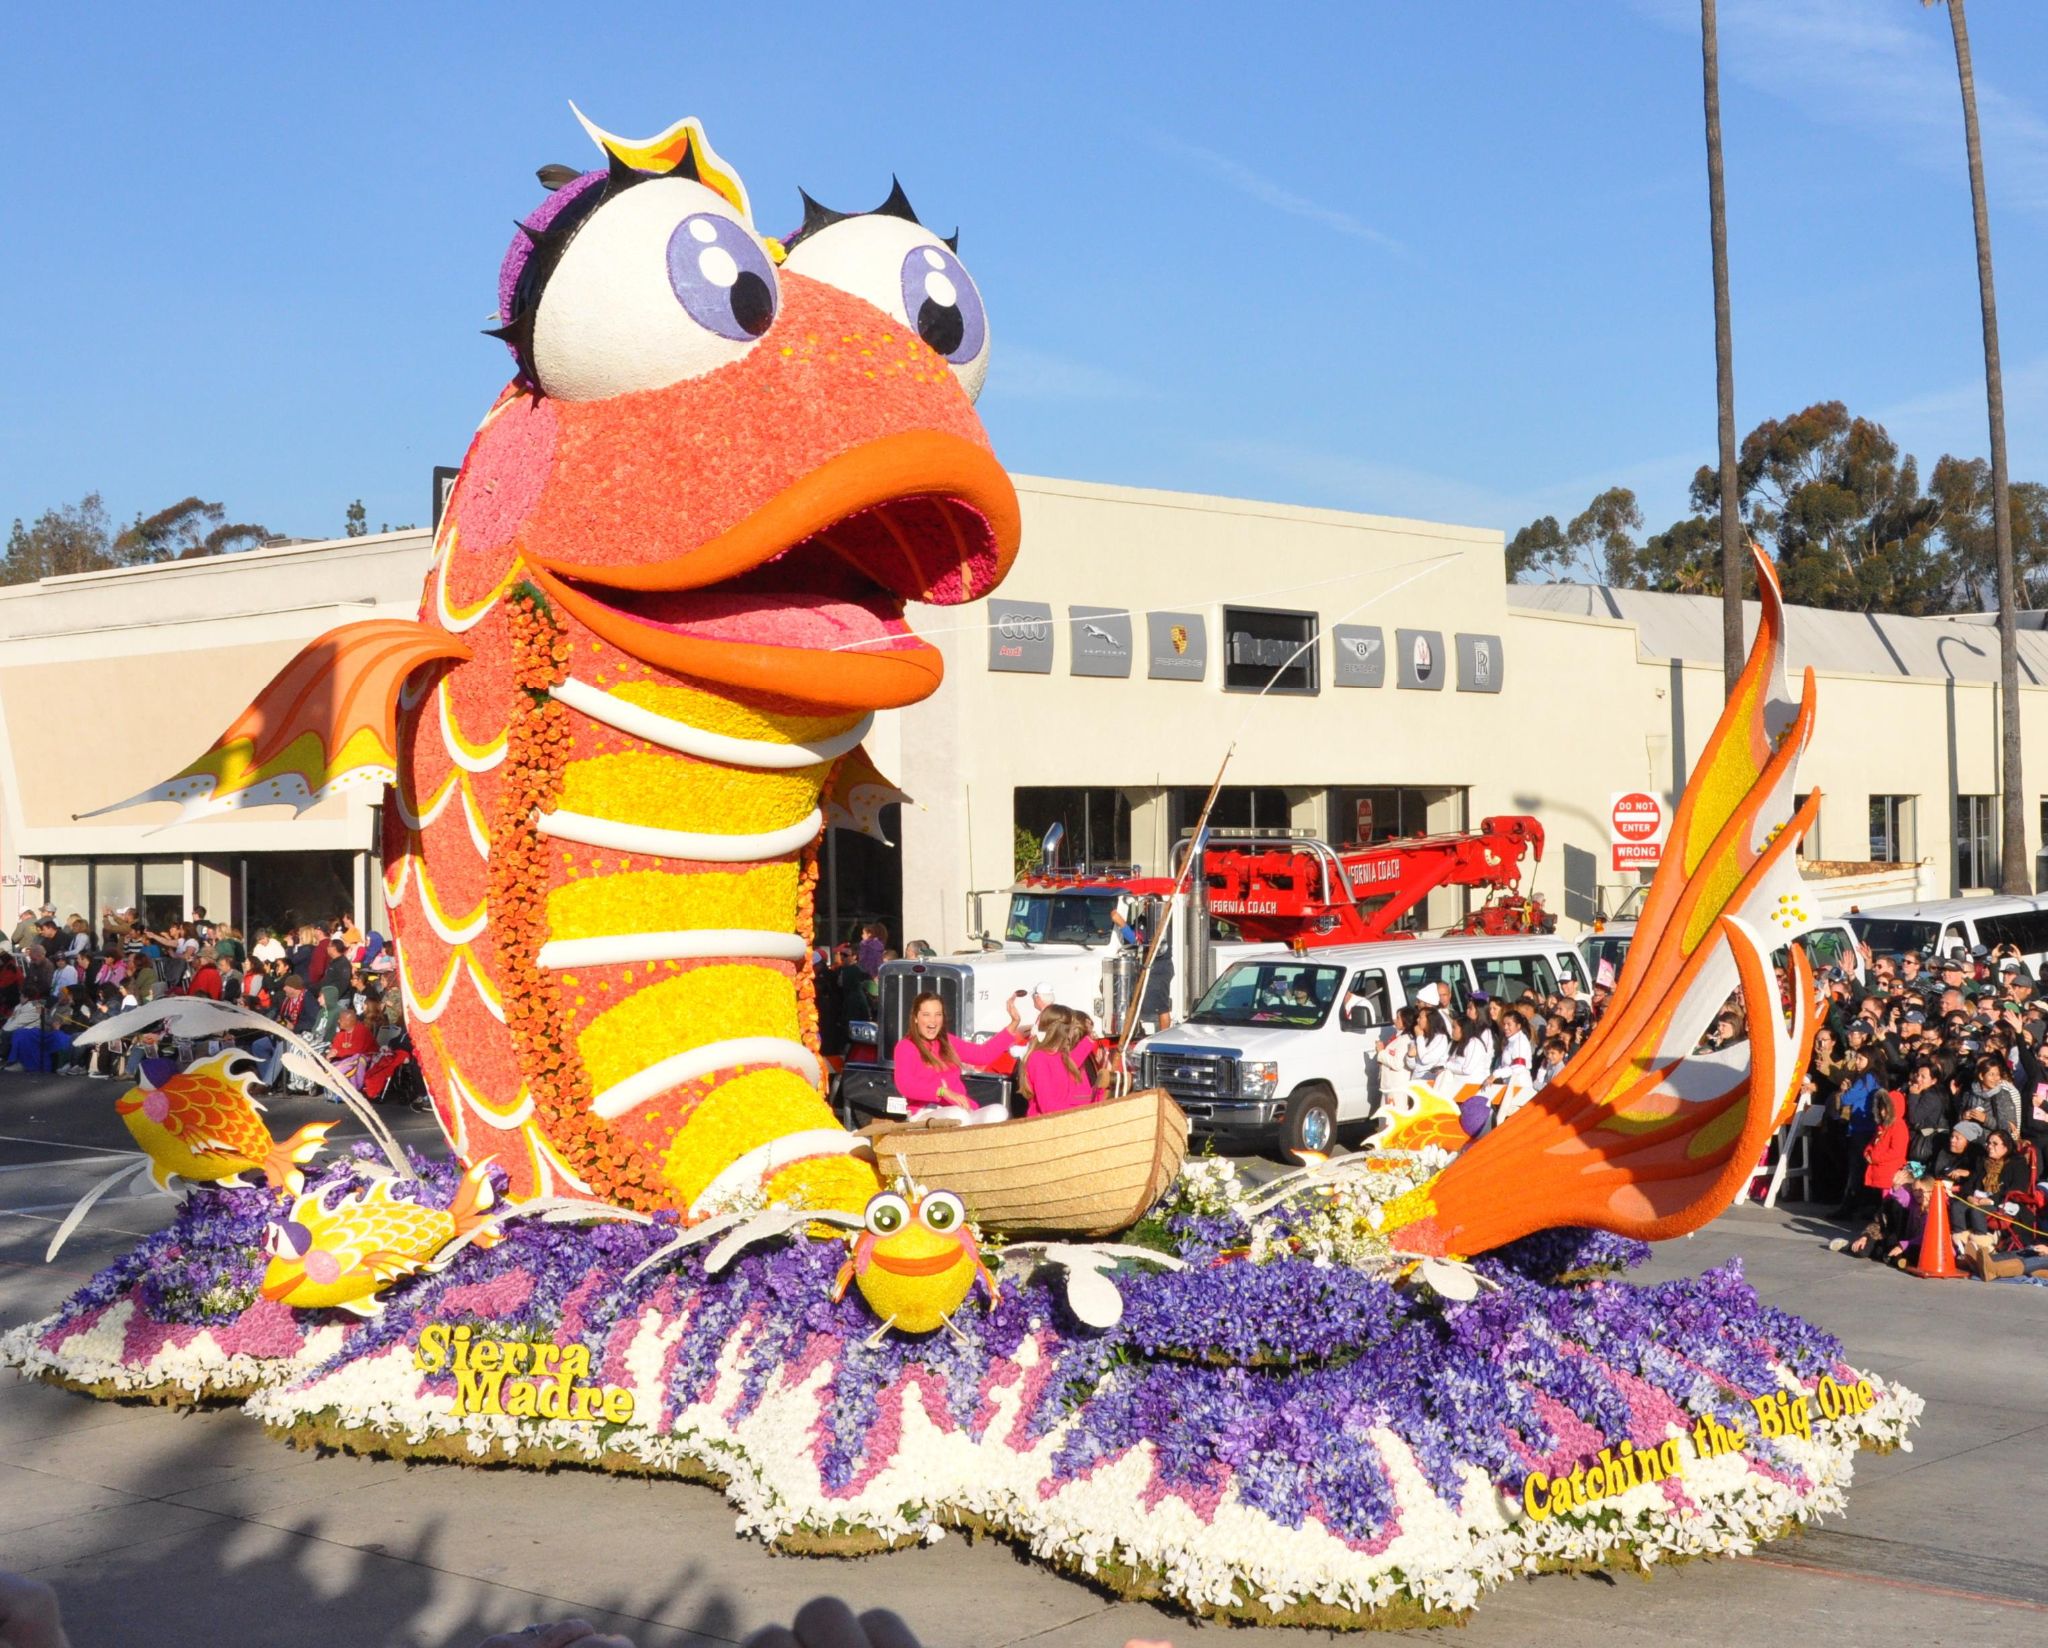 Sierra Madre (a), Tournament of Roses Parade, Pasadena, CA - 2014-01-01